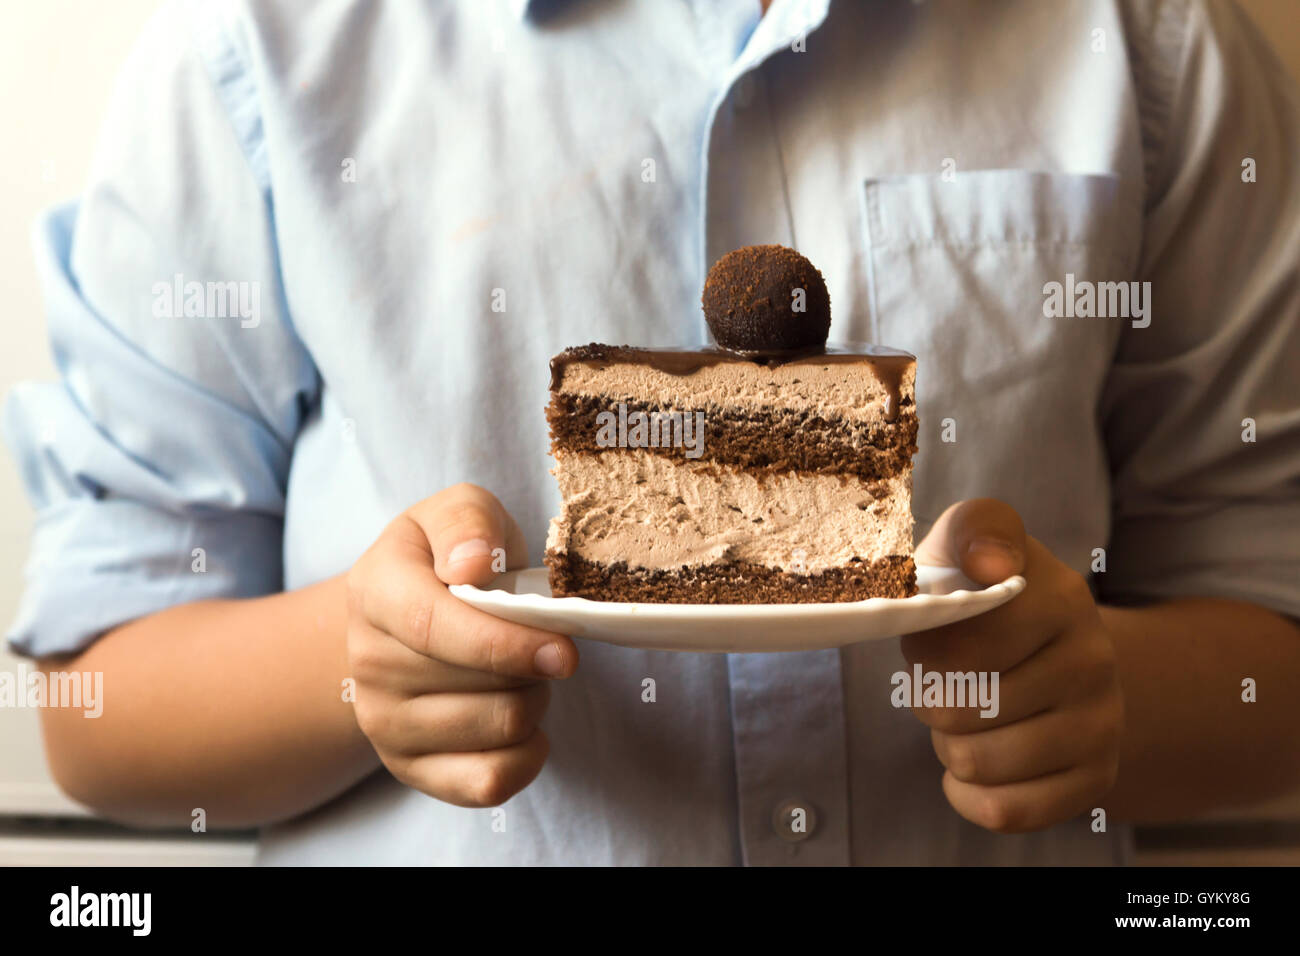 Closeup mani tenendo pezzo di torta al cioccolato in piastra bianca Foto Stock